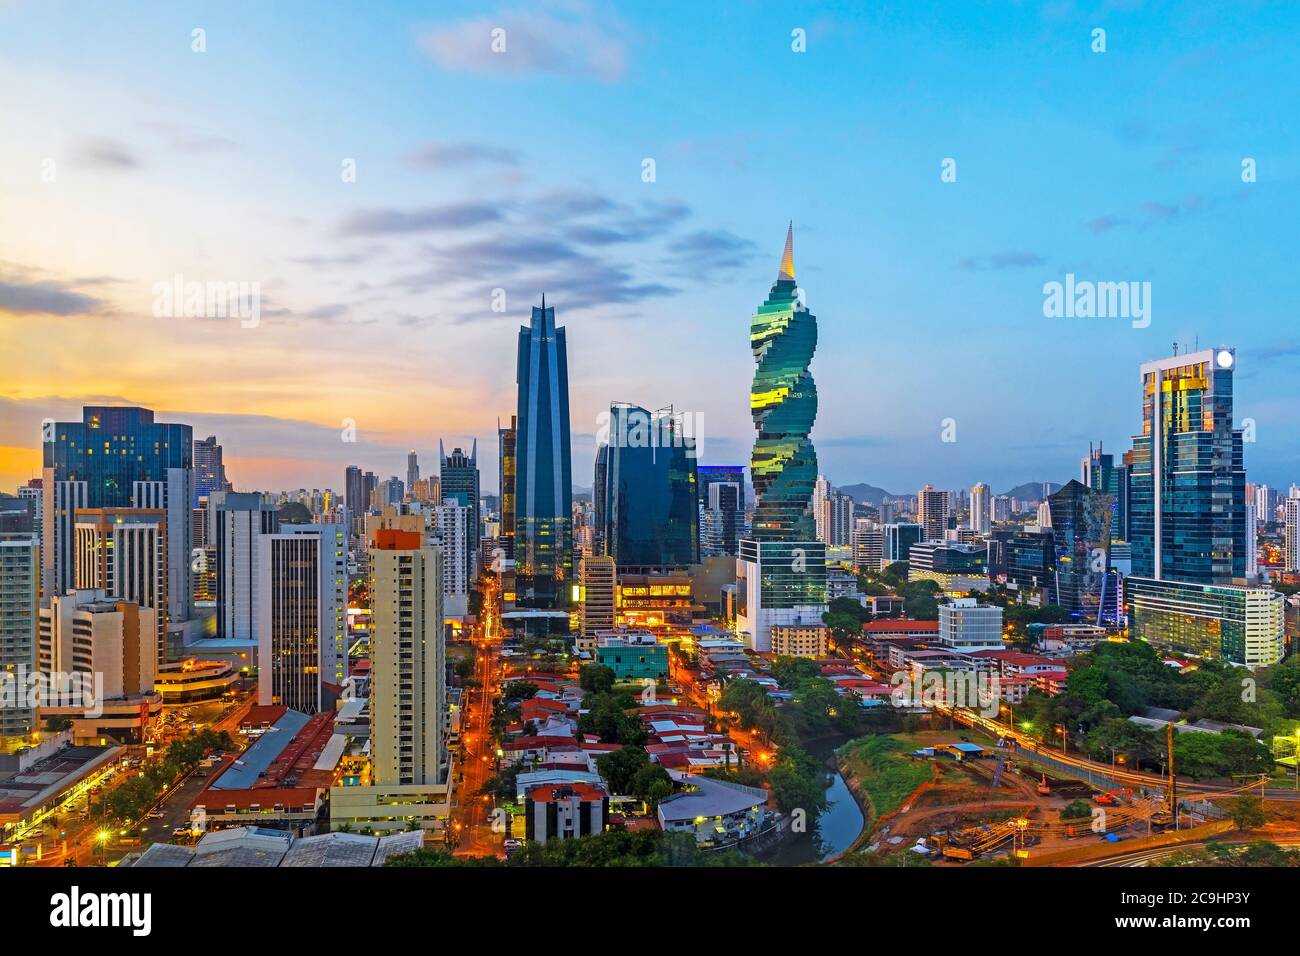 Die Skyline von Panama City mit ihren Wolkenkratzern im Finanzviertel bei Sonnenuntergang, Panama. Stockfoto